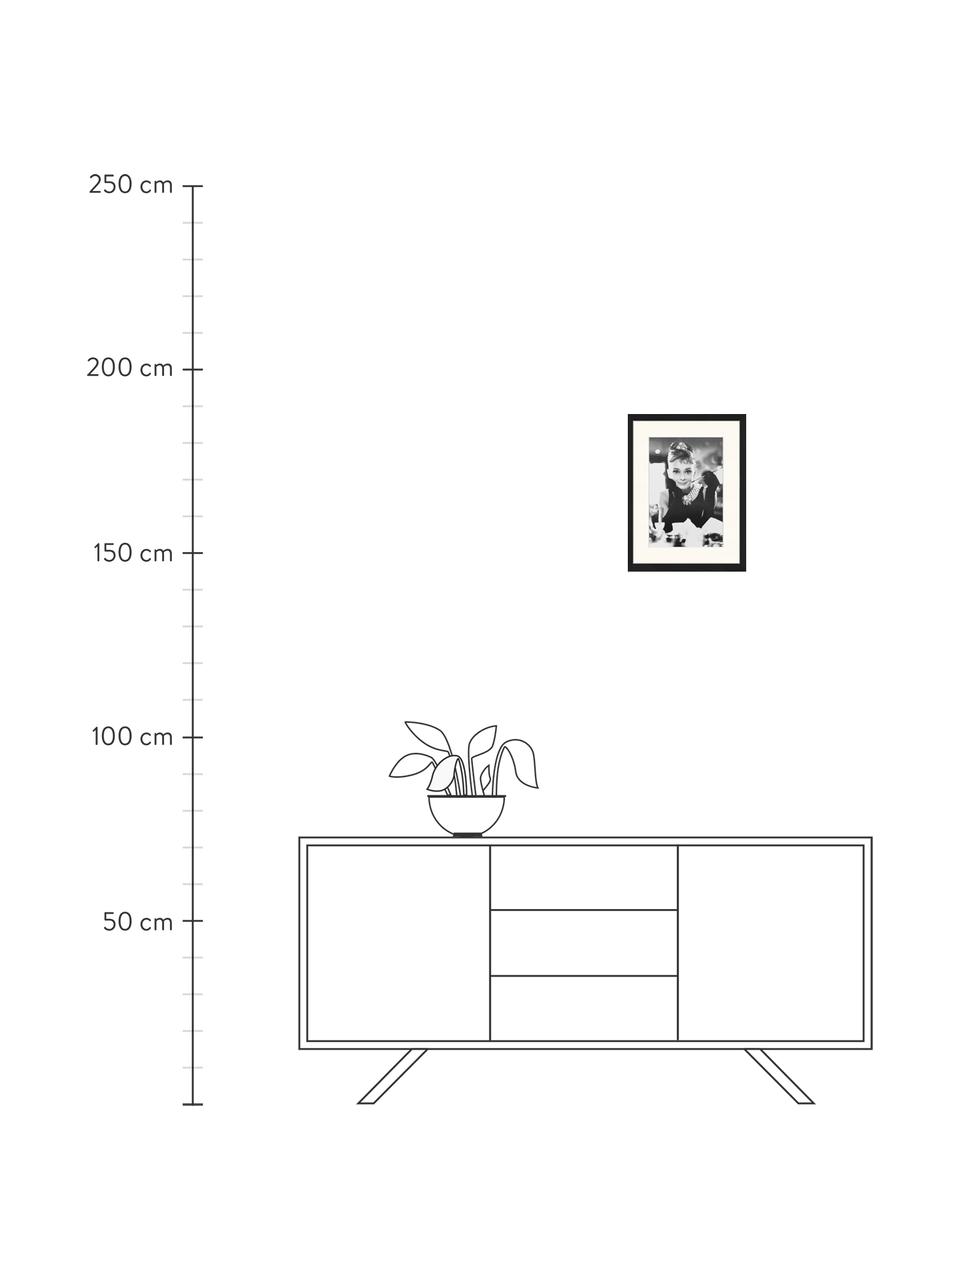 Gerahmter Digitaldruck Audrey, Bild: Digitaldruck auf Papier, , Rahmen: Holz, lackiert, Front: Plexiglas, Audrey Hepburn, B 33 x H 43 cm